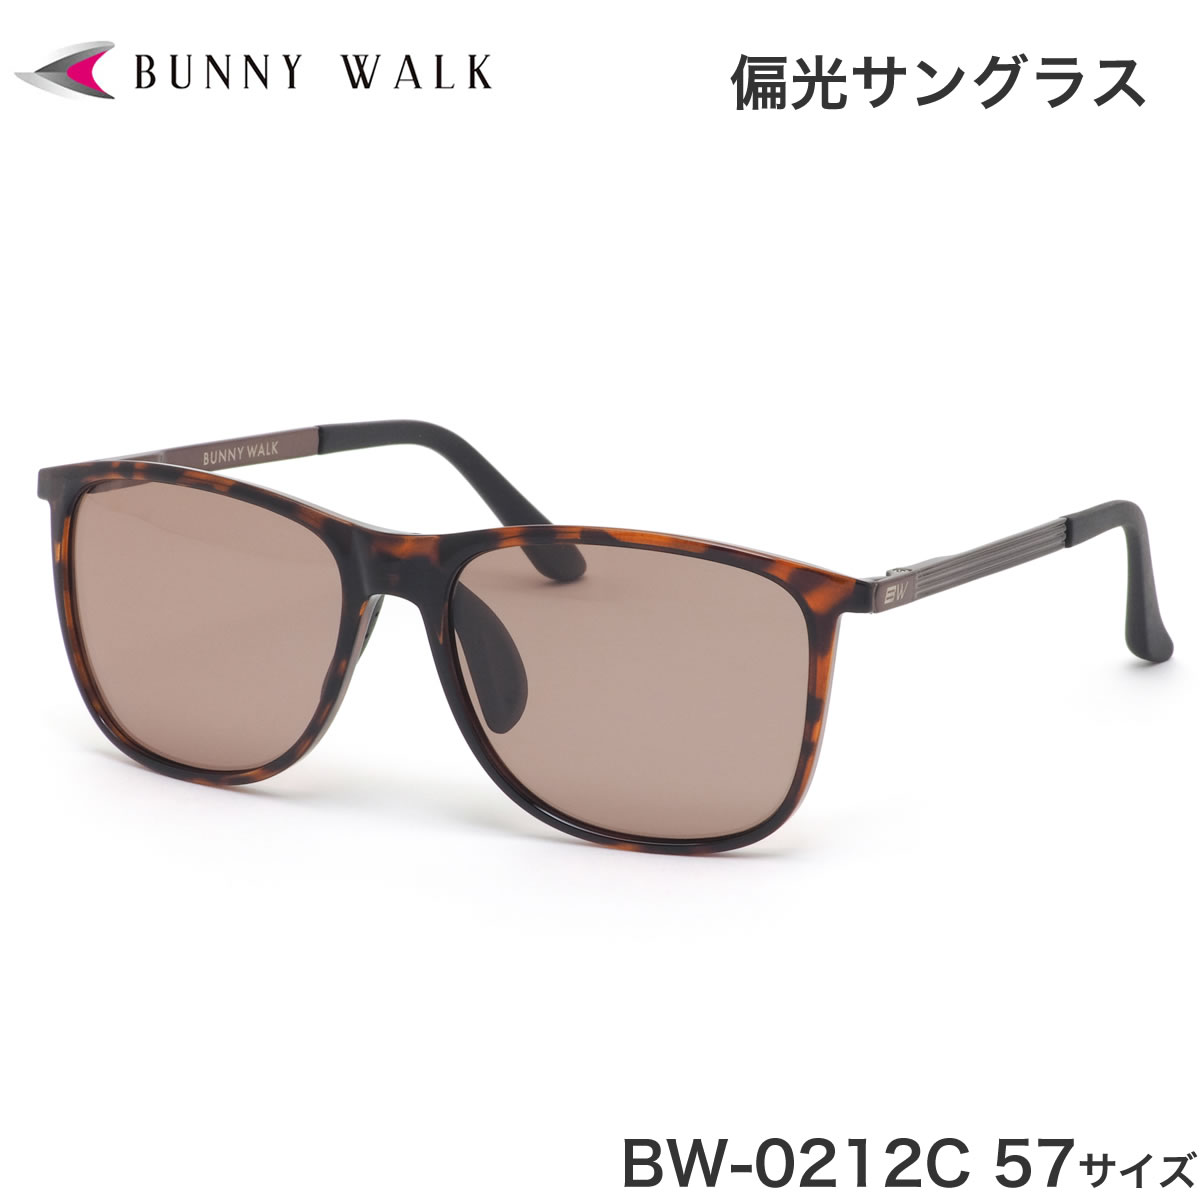 BUNNY WALK(バニーウォーク) ナイトグラス BW-022 BW-0225Y ブラック